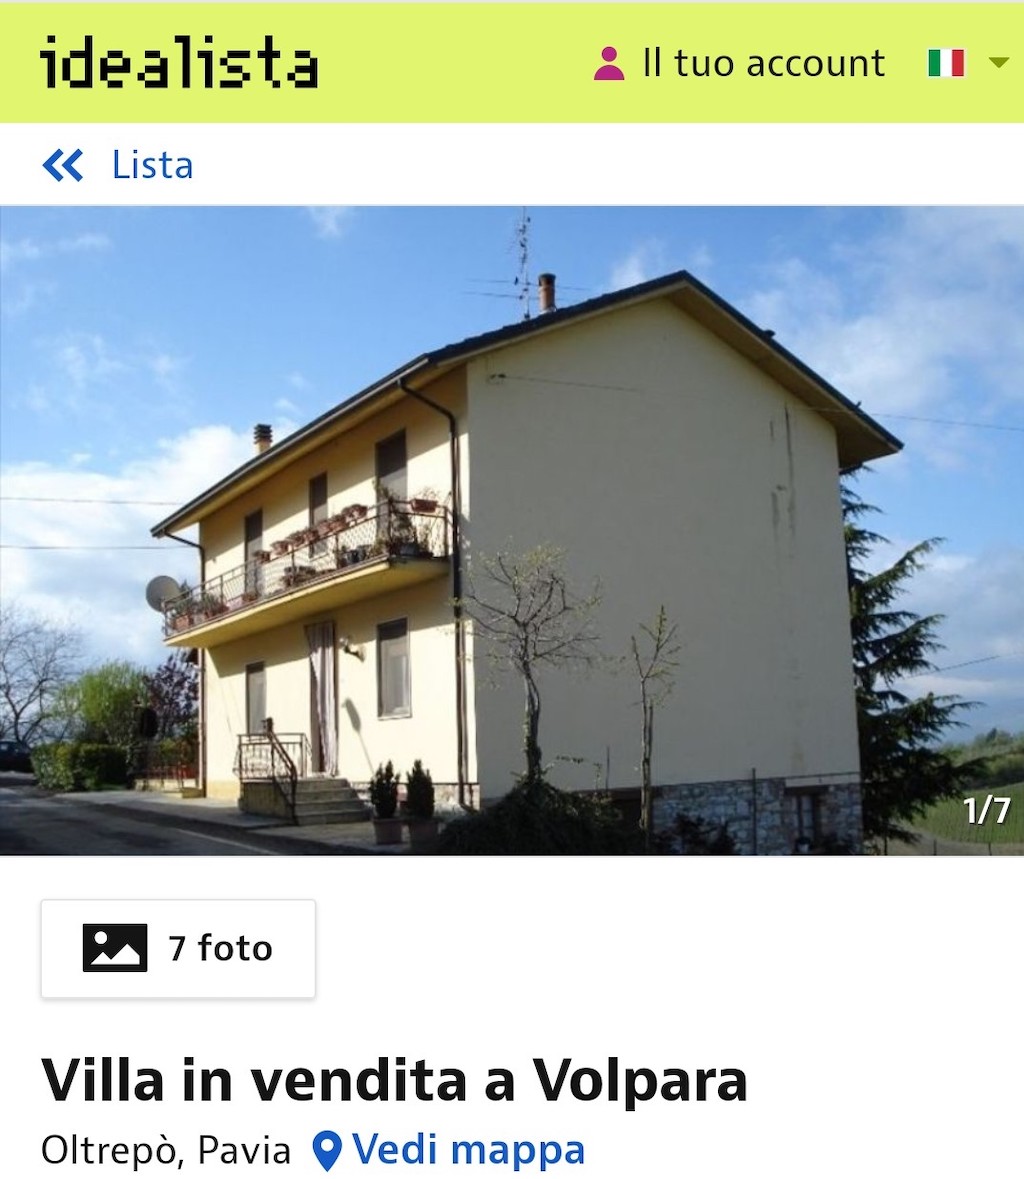 Op huizenjacht in Italië via internet: niet zonder gevaren